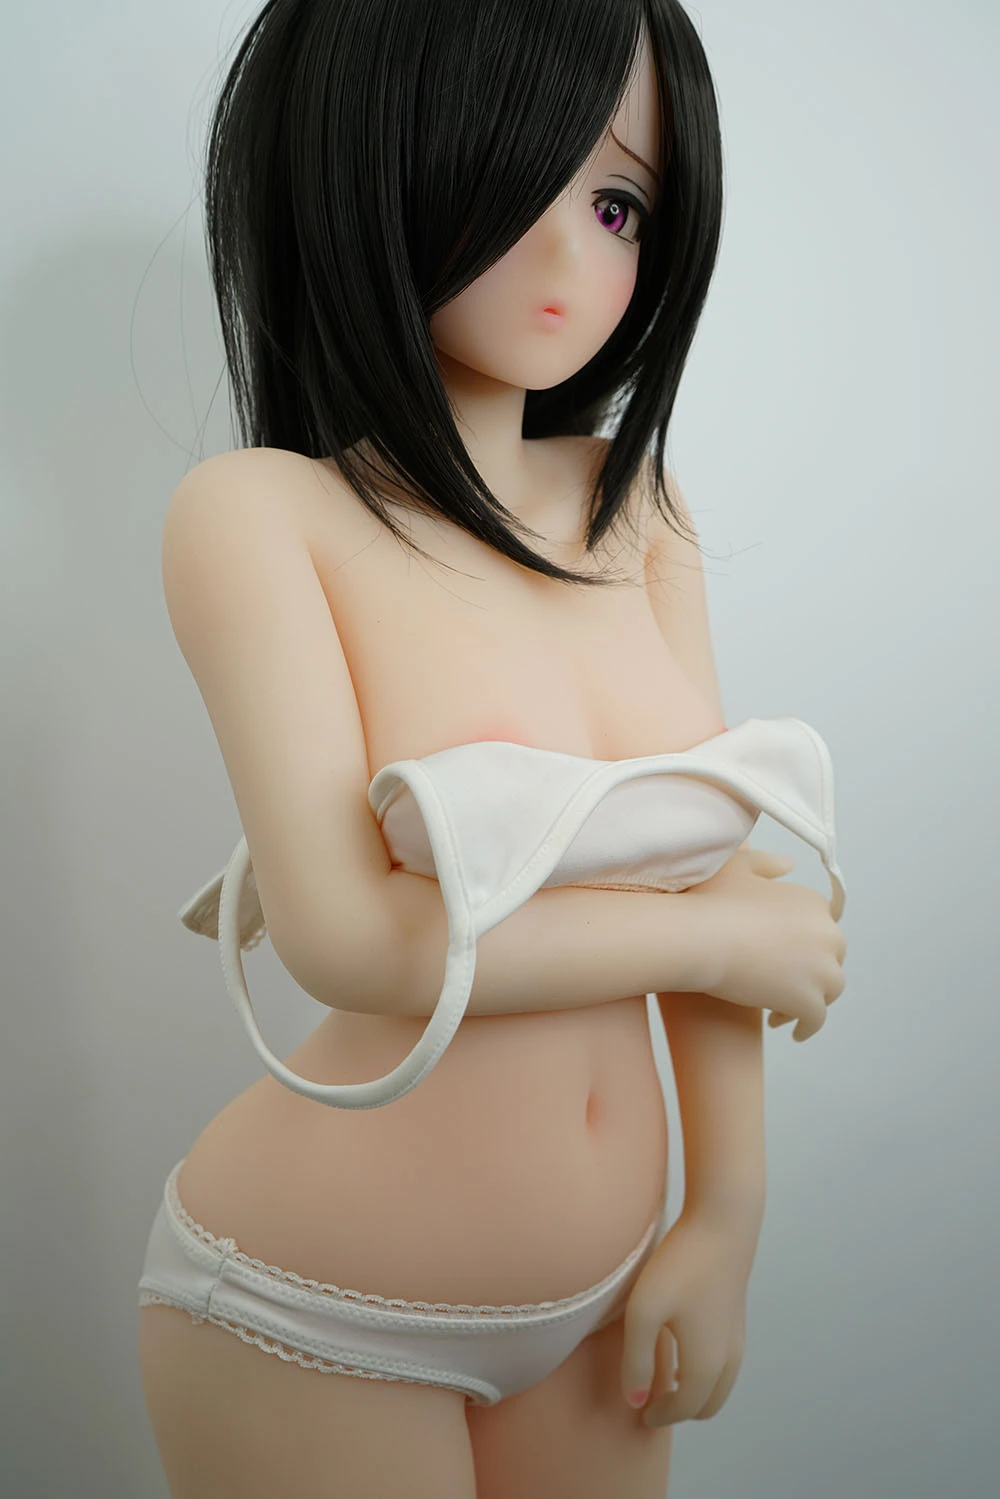 Medium breast love doll